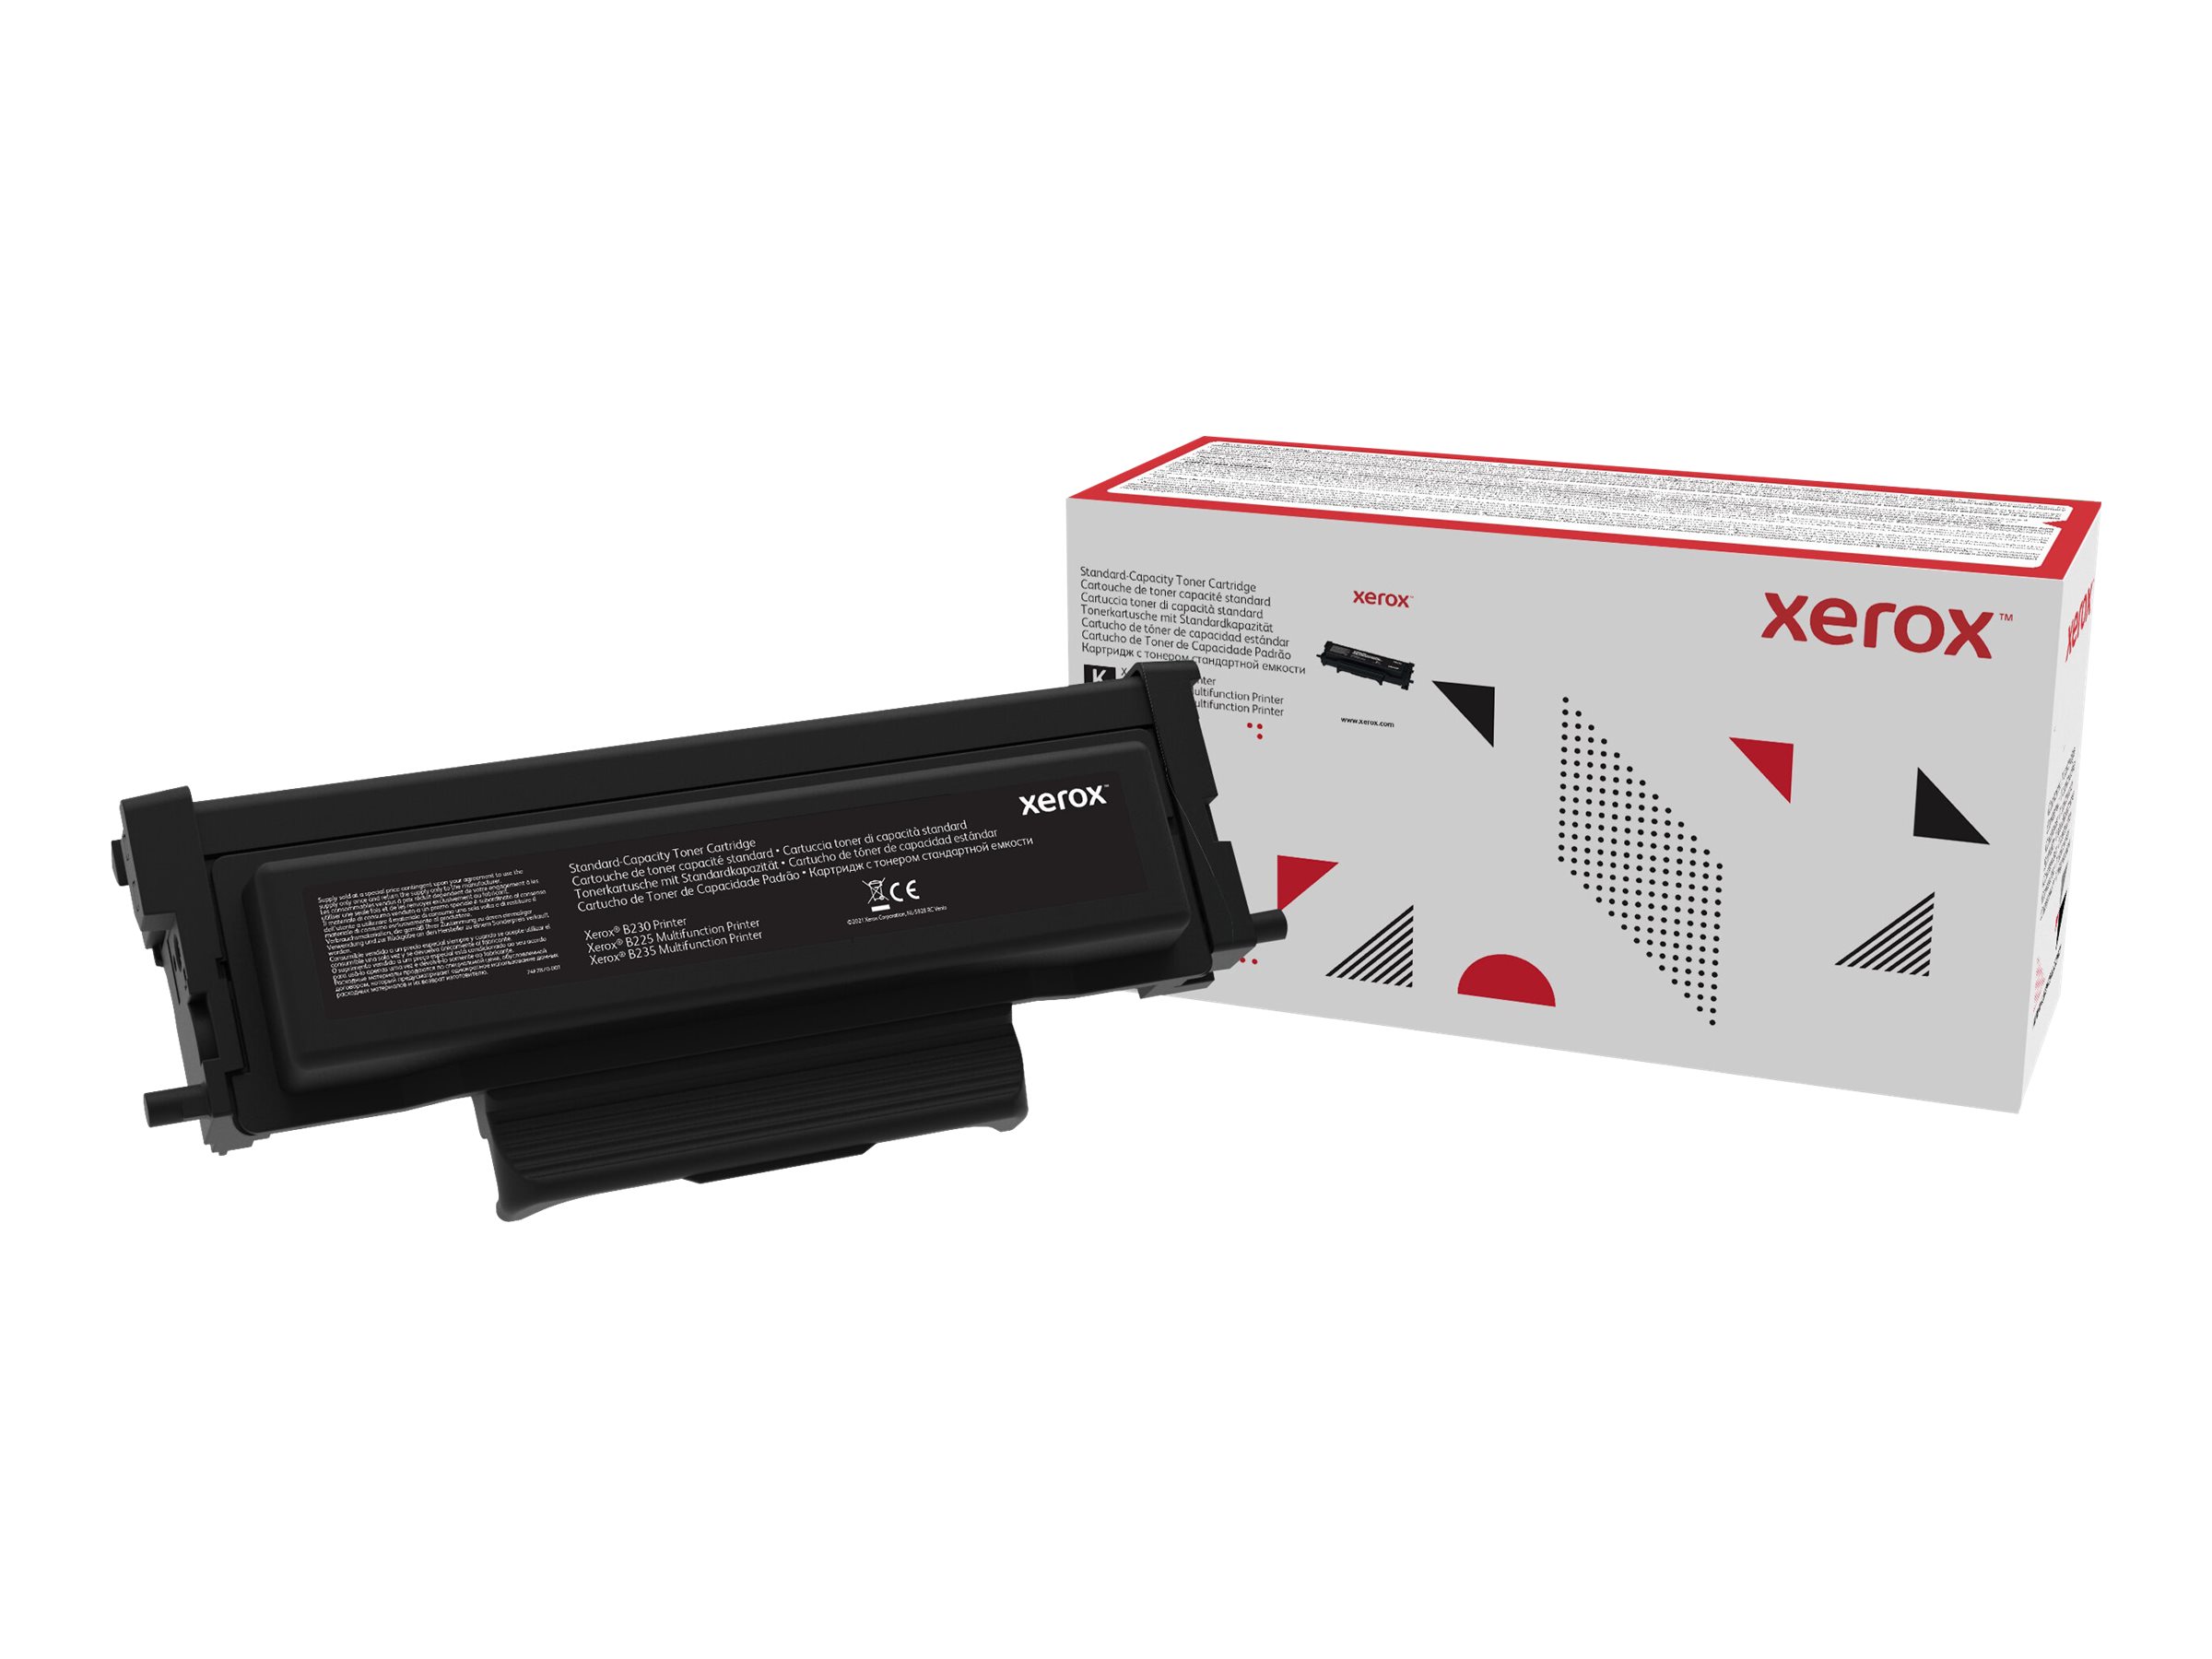 Xerox - Noir - original - cartouche de toner - pour Xerox B225, B230, B235 - 006R04399 - Cartouches de toner